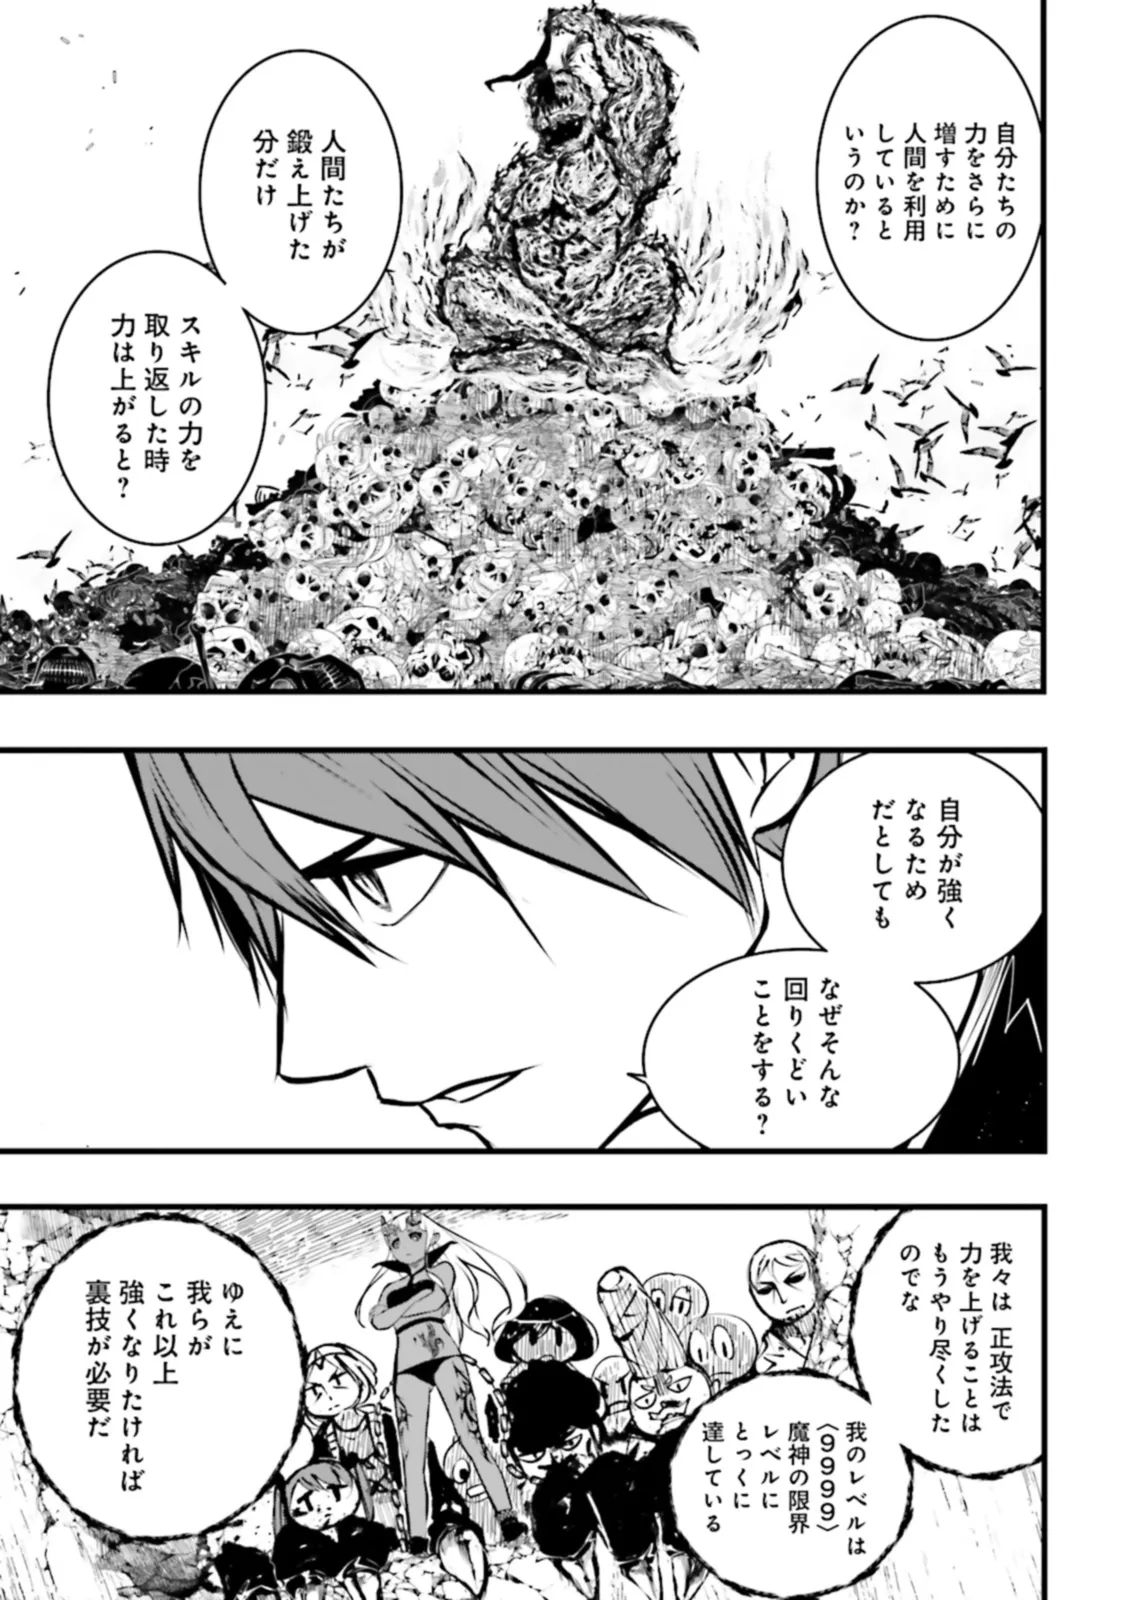 Sukiru Ga Nakereba Level wo Ageru ~ 99 Ga Kansuto No Sekai De Reberu 800 Man Kara Sutato ~ - Chapter 36.2 - Page 7